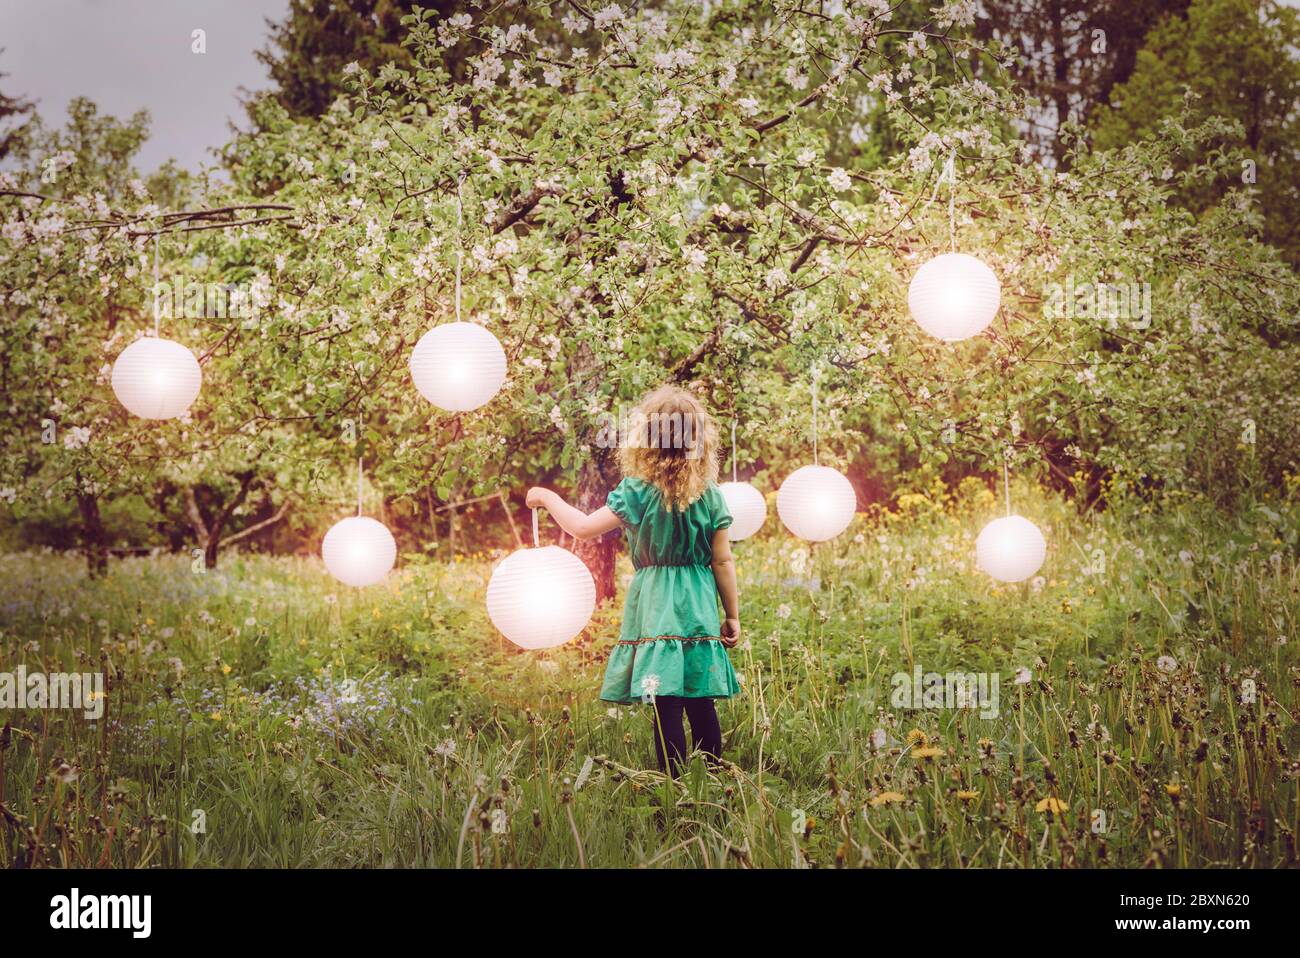 Carino biondo riccia capelli ragazza in piedi in casa Apple giardino, tenendo incandescente lanterna di carta rotonda e lanterne molto appeso da fiore albero di mele. E Foto Stock